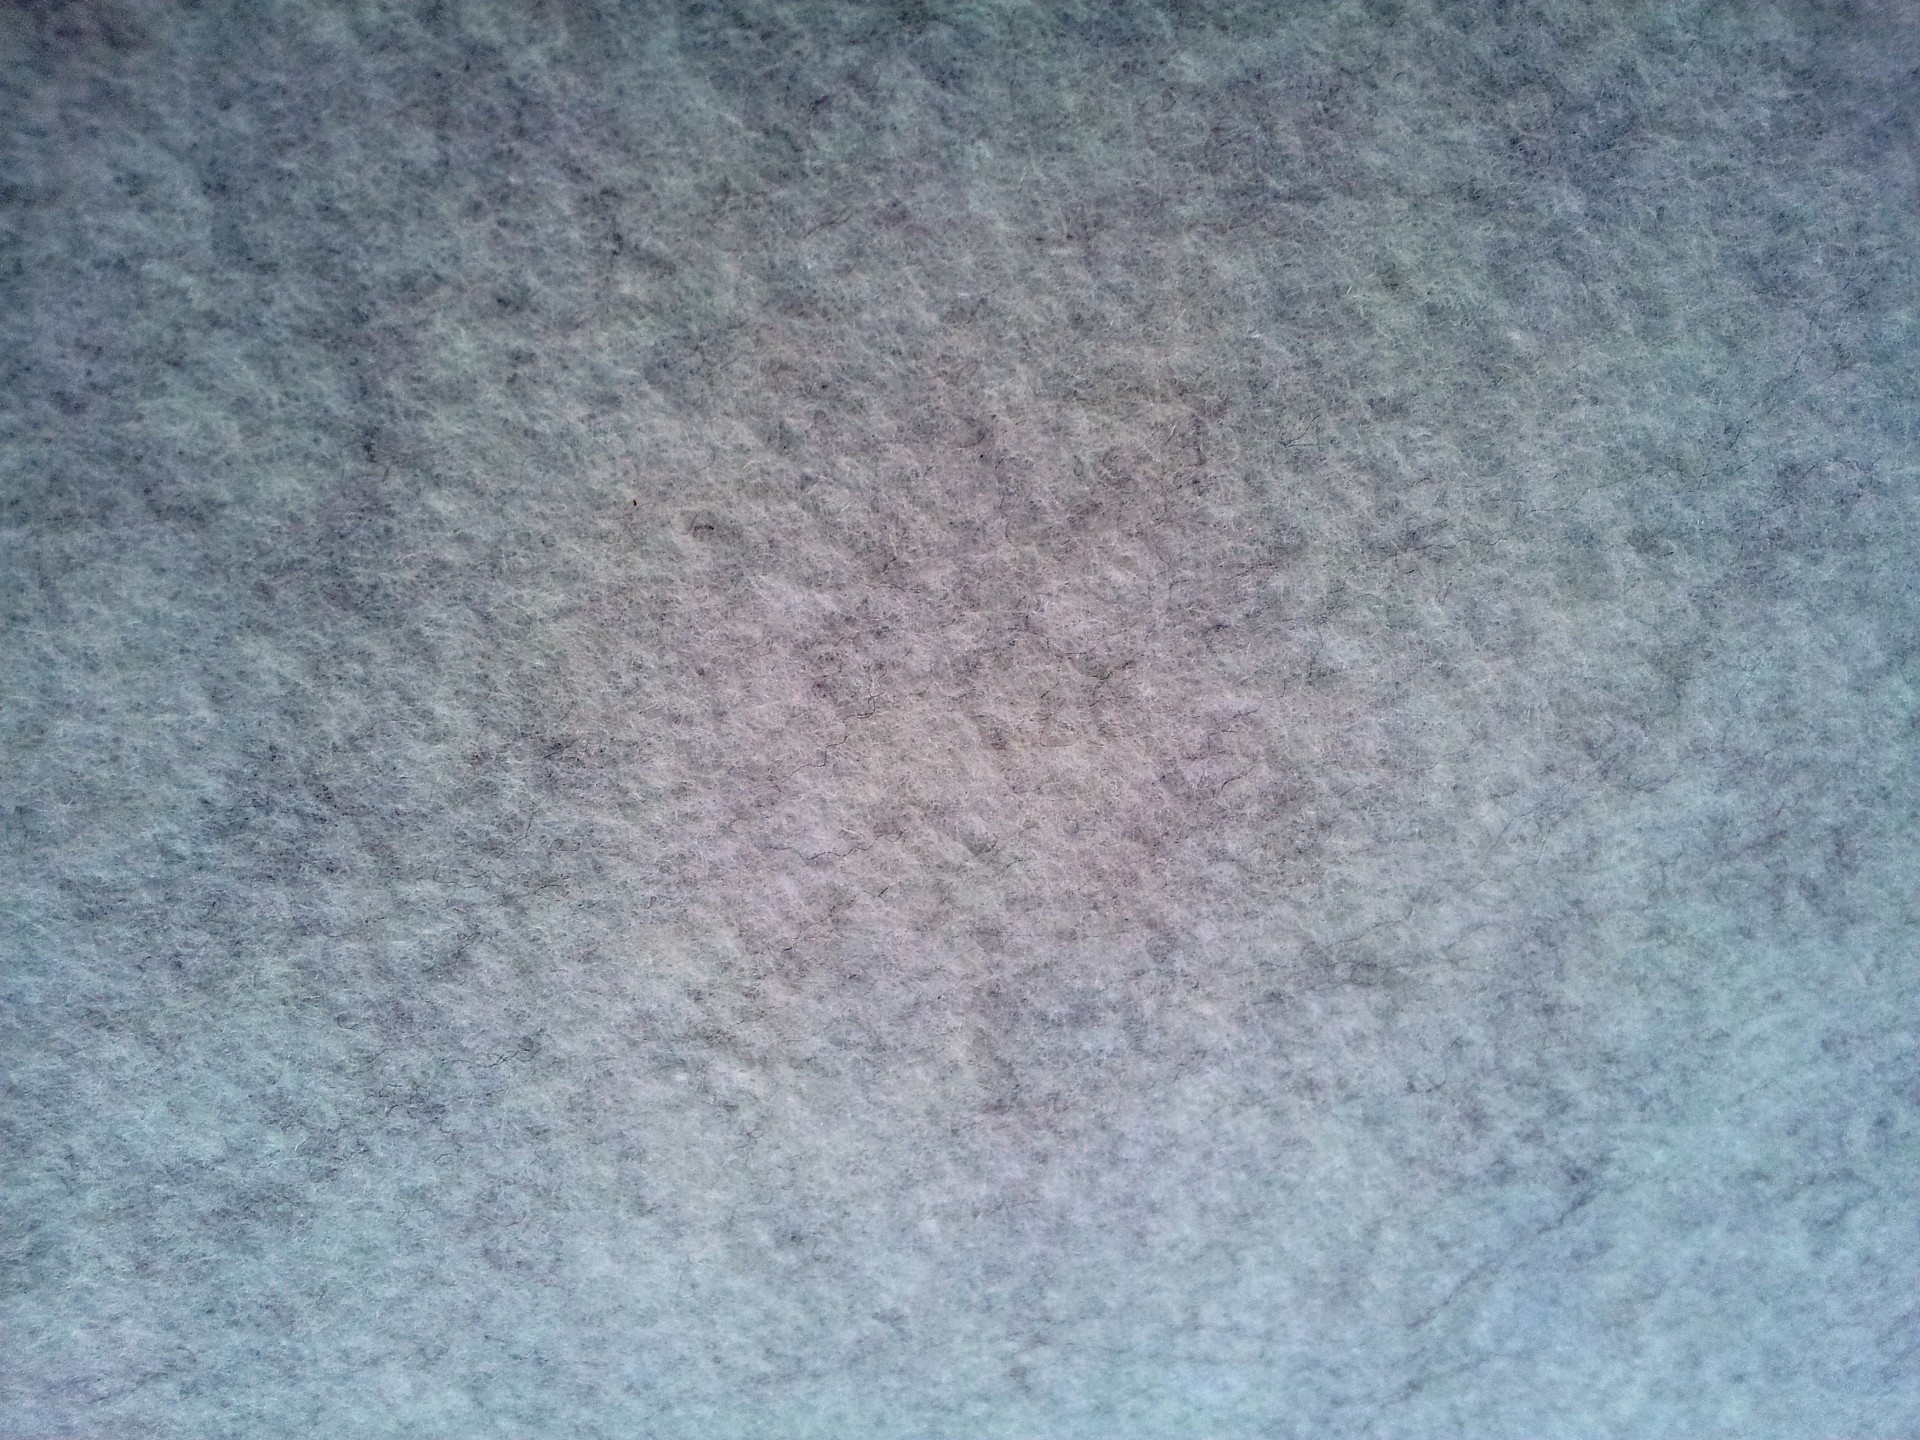 Cotton Texture Surface